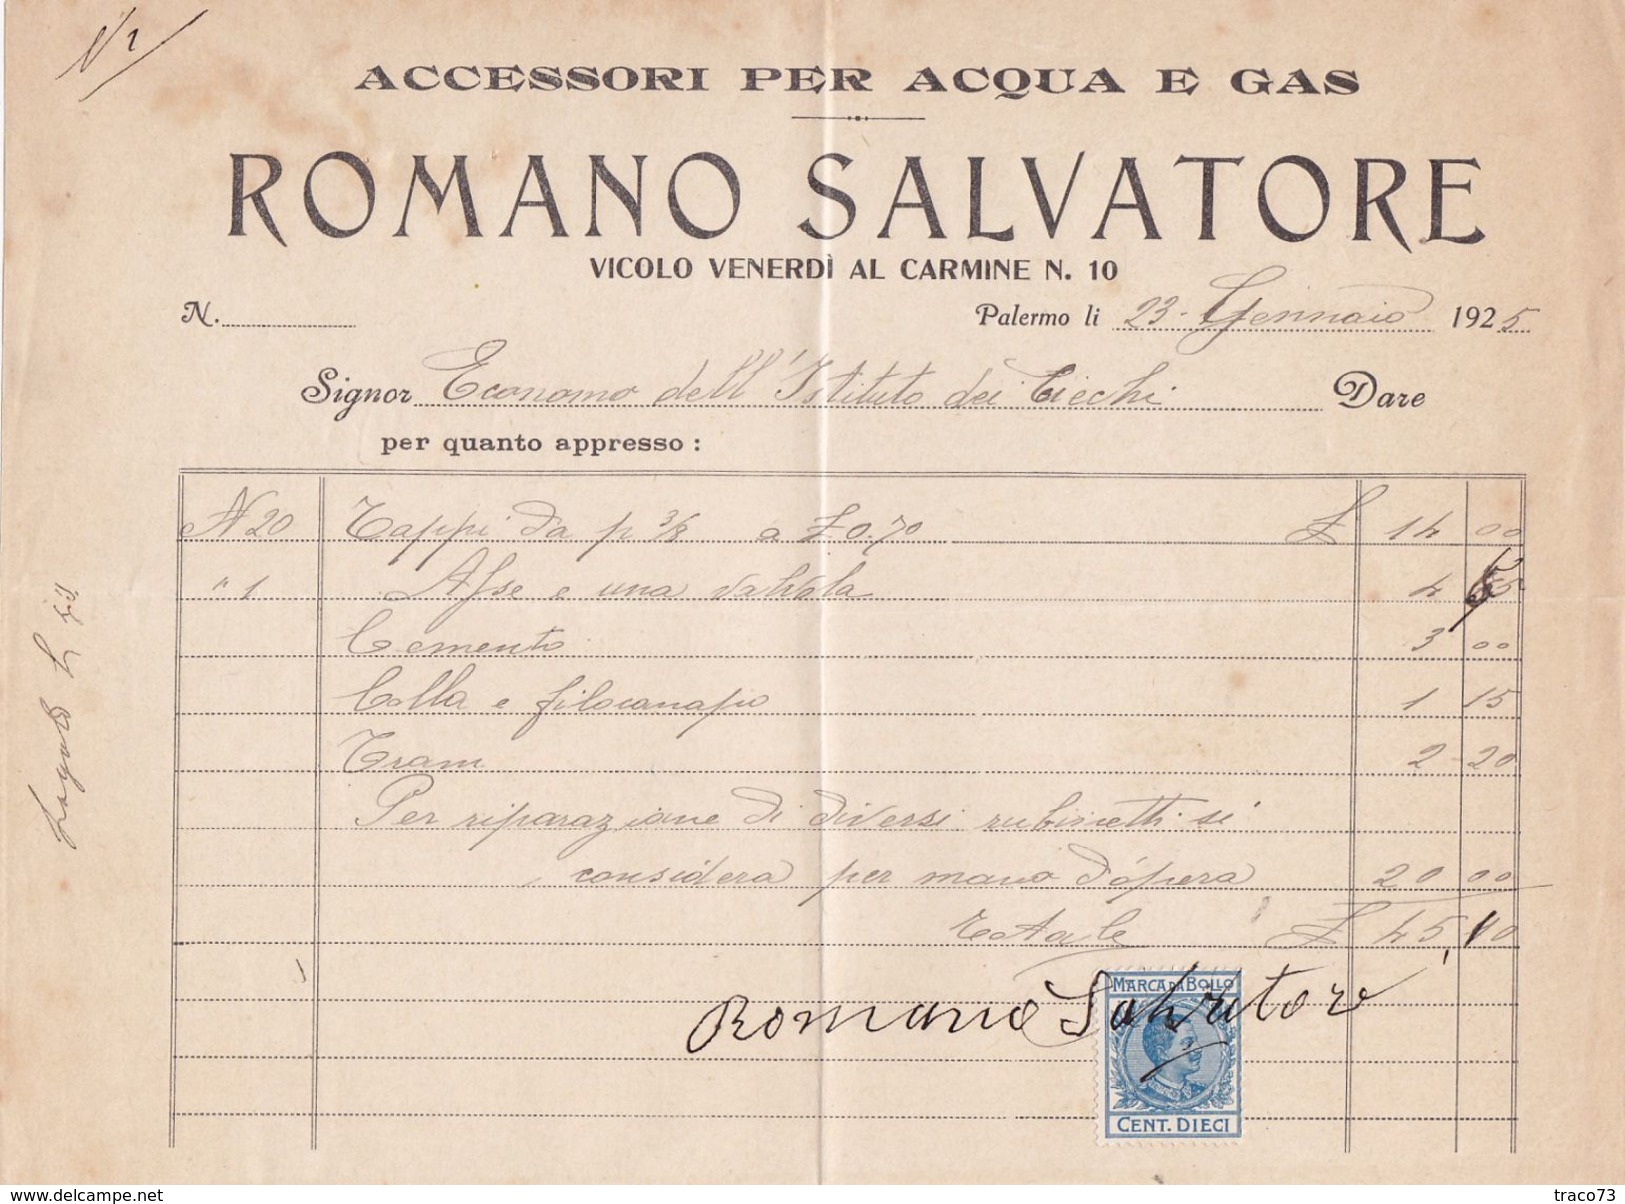 PALERMO  _ 1925  /  Accessori Per Acqua E Gas  ROMANO SALVATORE - Documento Commerciale _ Marche Da Bollo - Italia